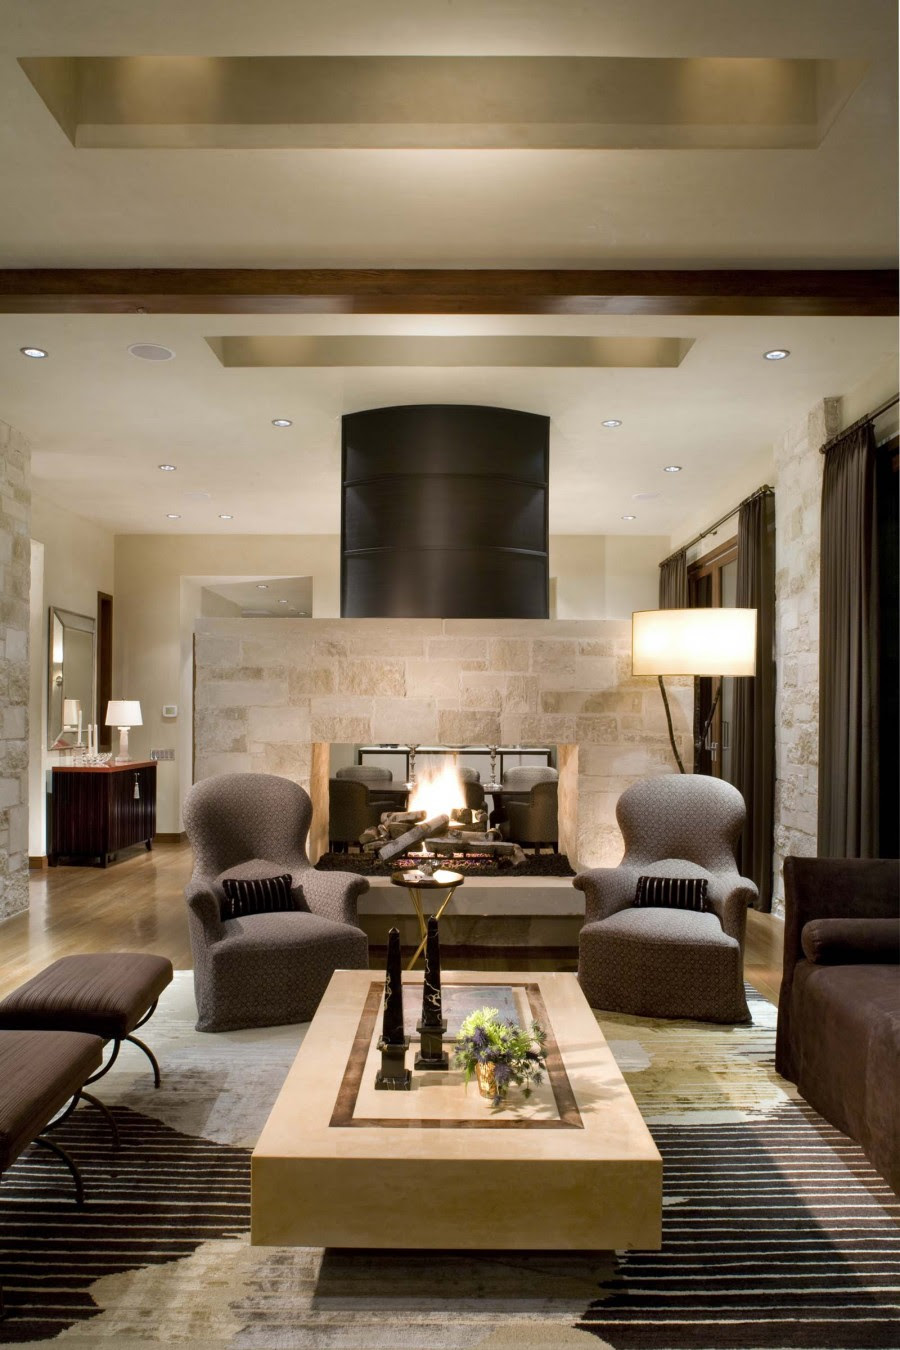 Home Decor Ideas For Living Room